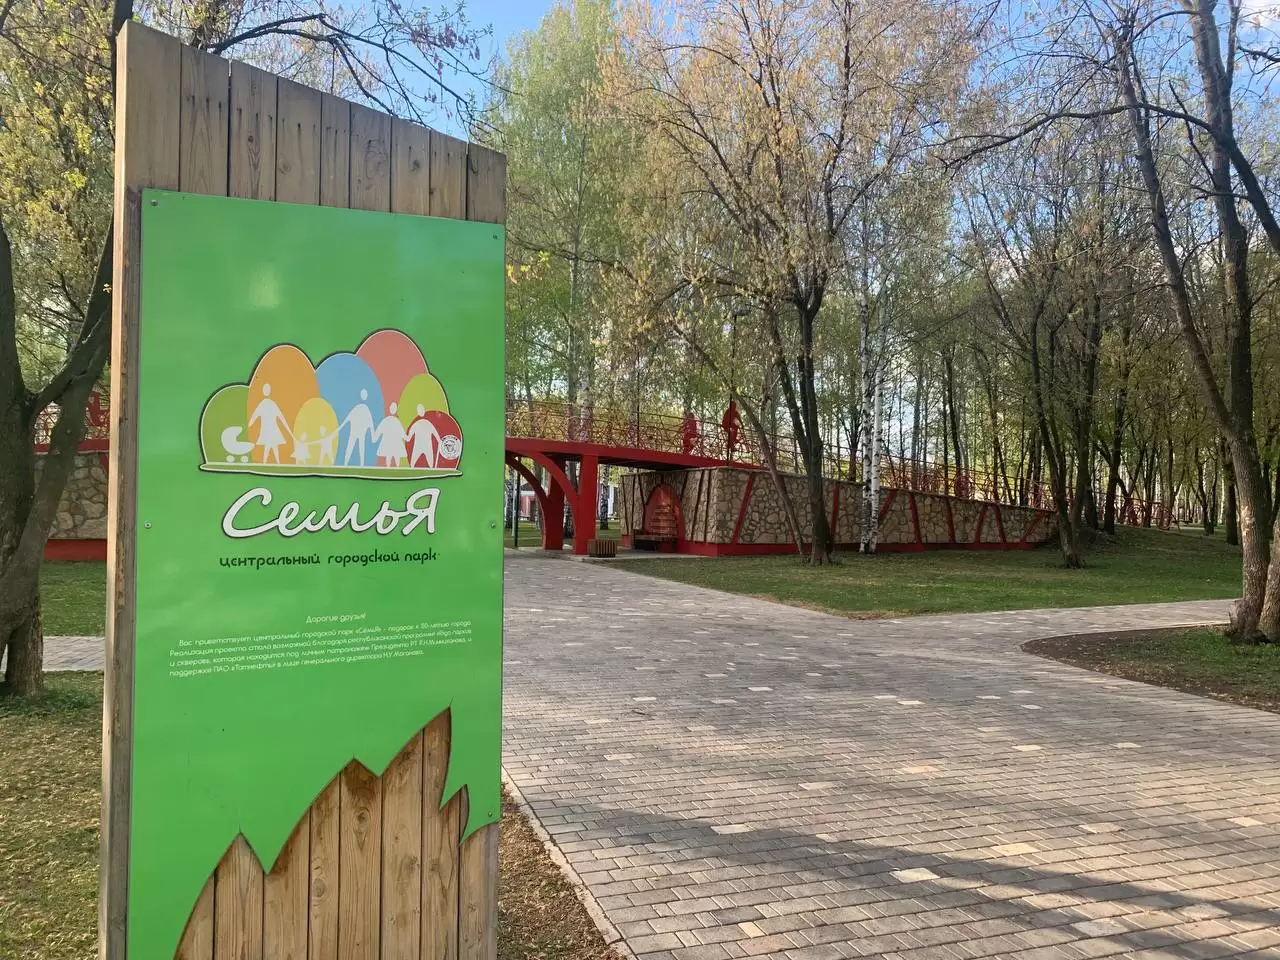 Нижнекамцев приглашают на День славянской письменности и культуры в парк «СемьЯ»